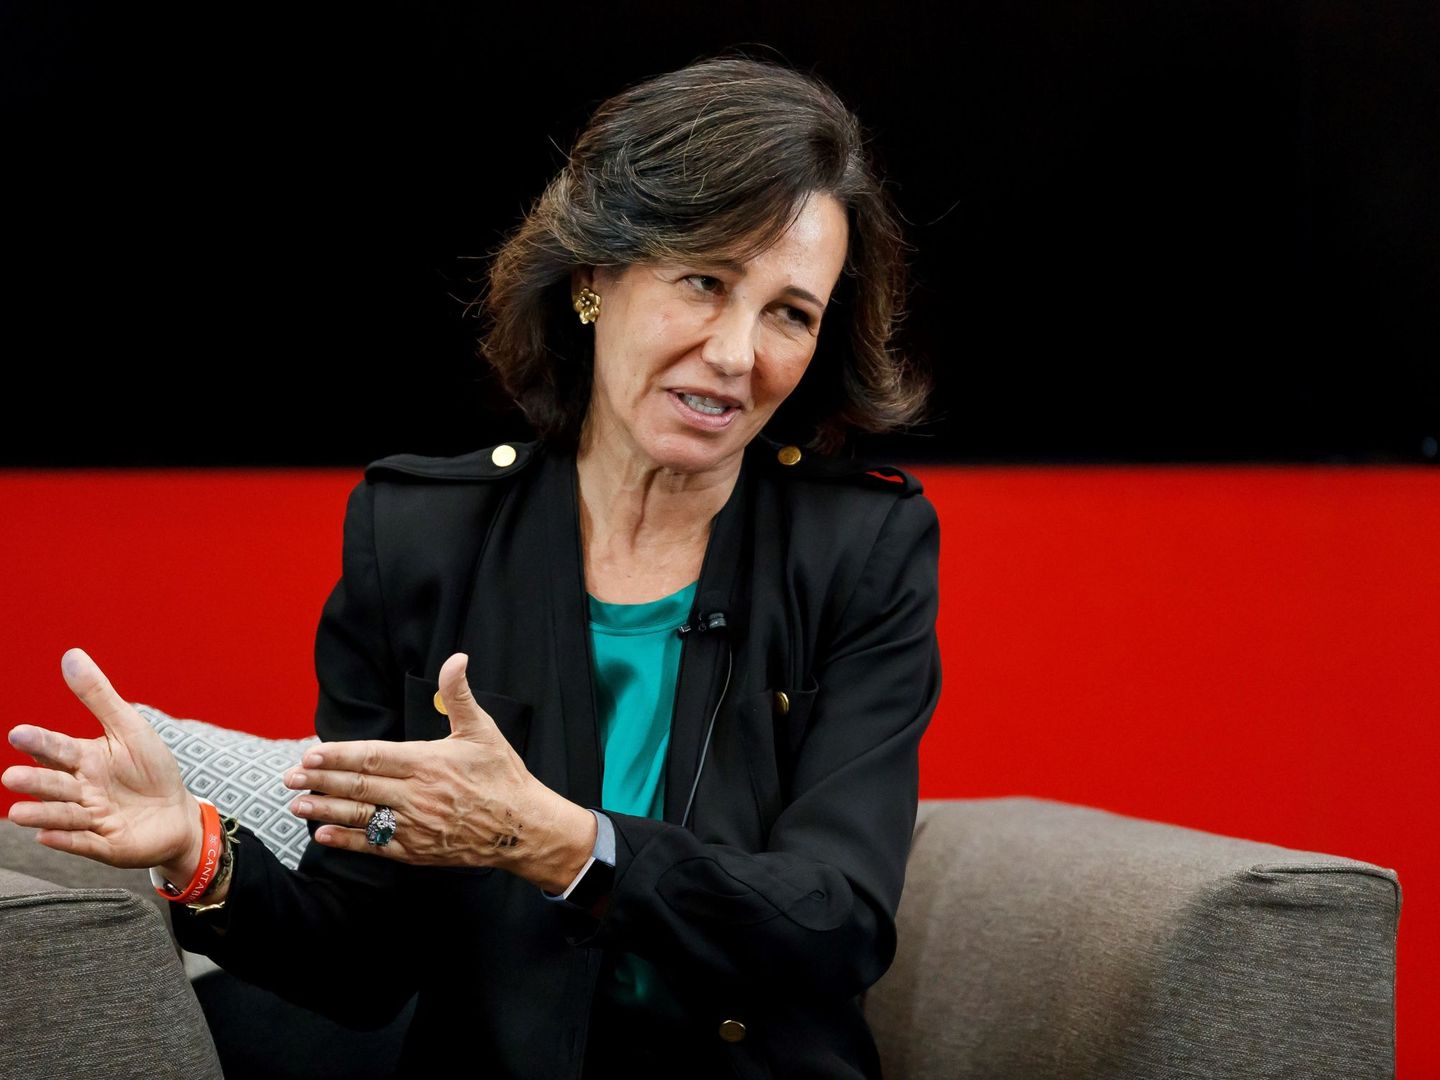 La presidenta del Banco Santander, Ana Patricia Botín, en un acto. (EFE)